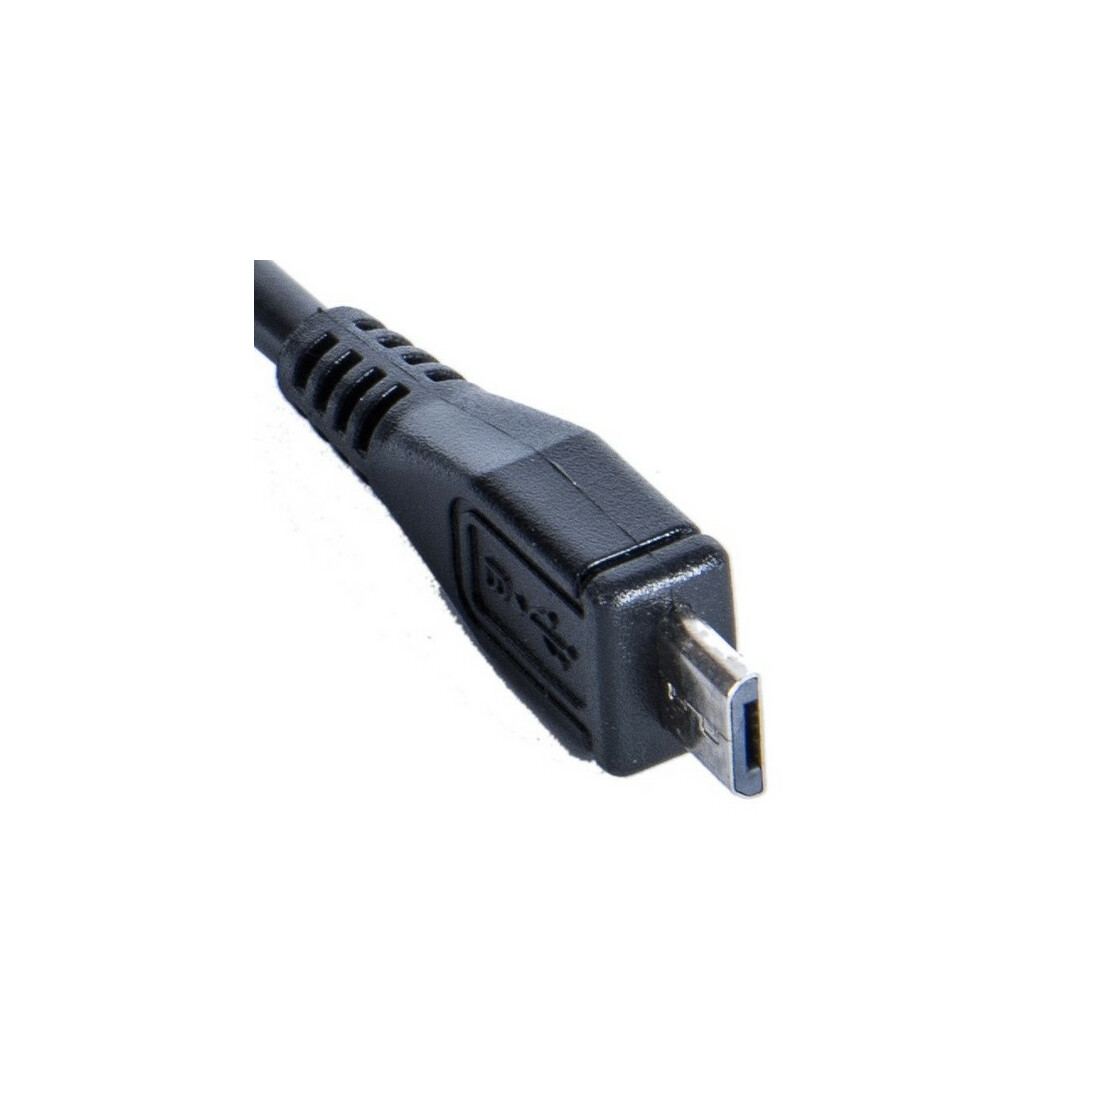 USB Kabel für Bose SoundLink Revolve Ladekabel 2A grau 